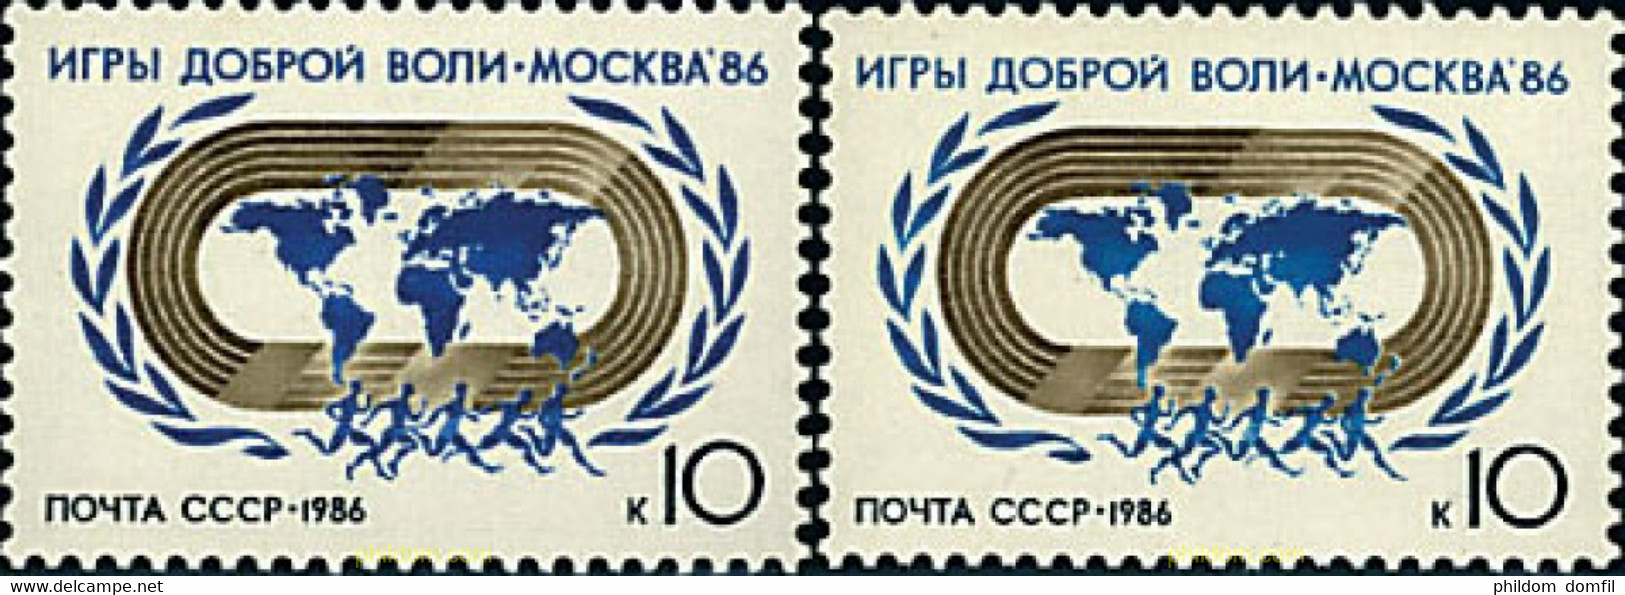 63501 MNH UNION SOVIETICA 1986 JUEGOS DEPORTIVOS INTERNACIONALES DE LA BUENA VOLUNTAD - Collections